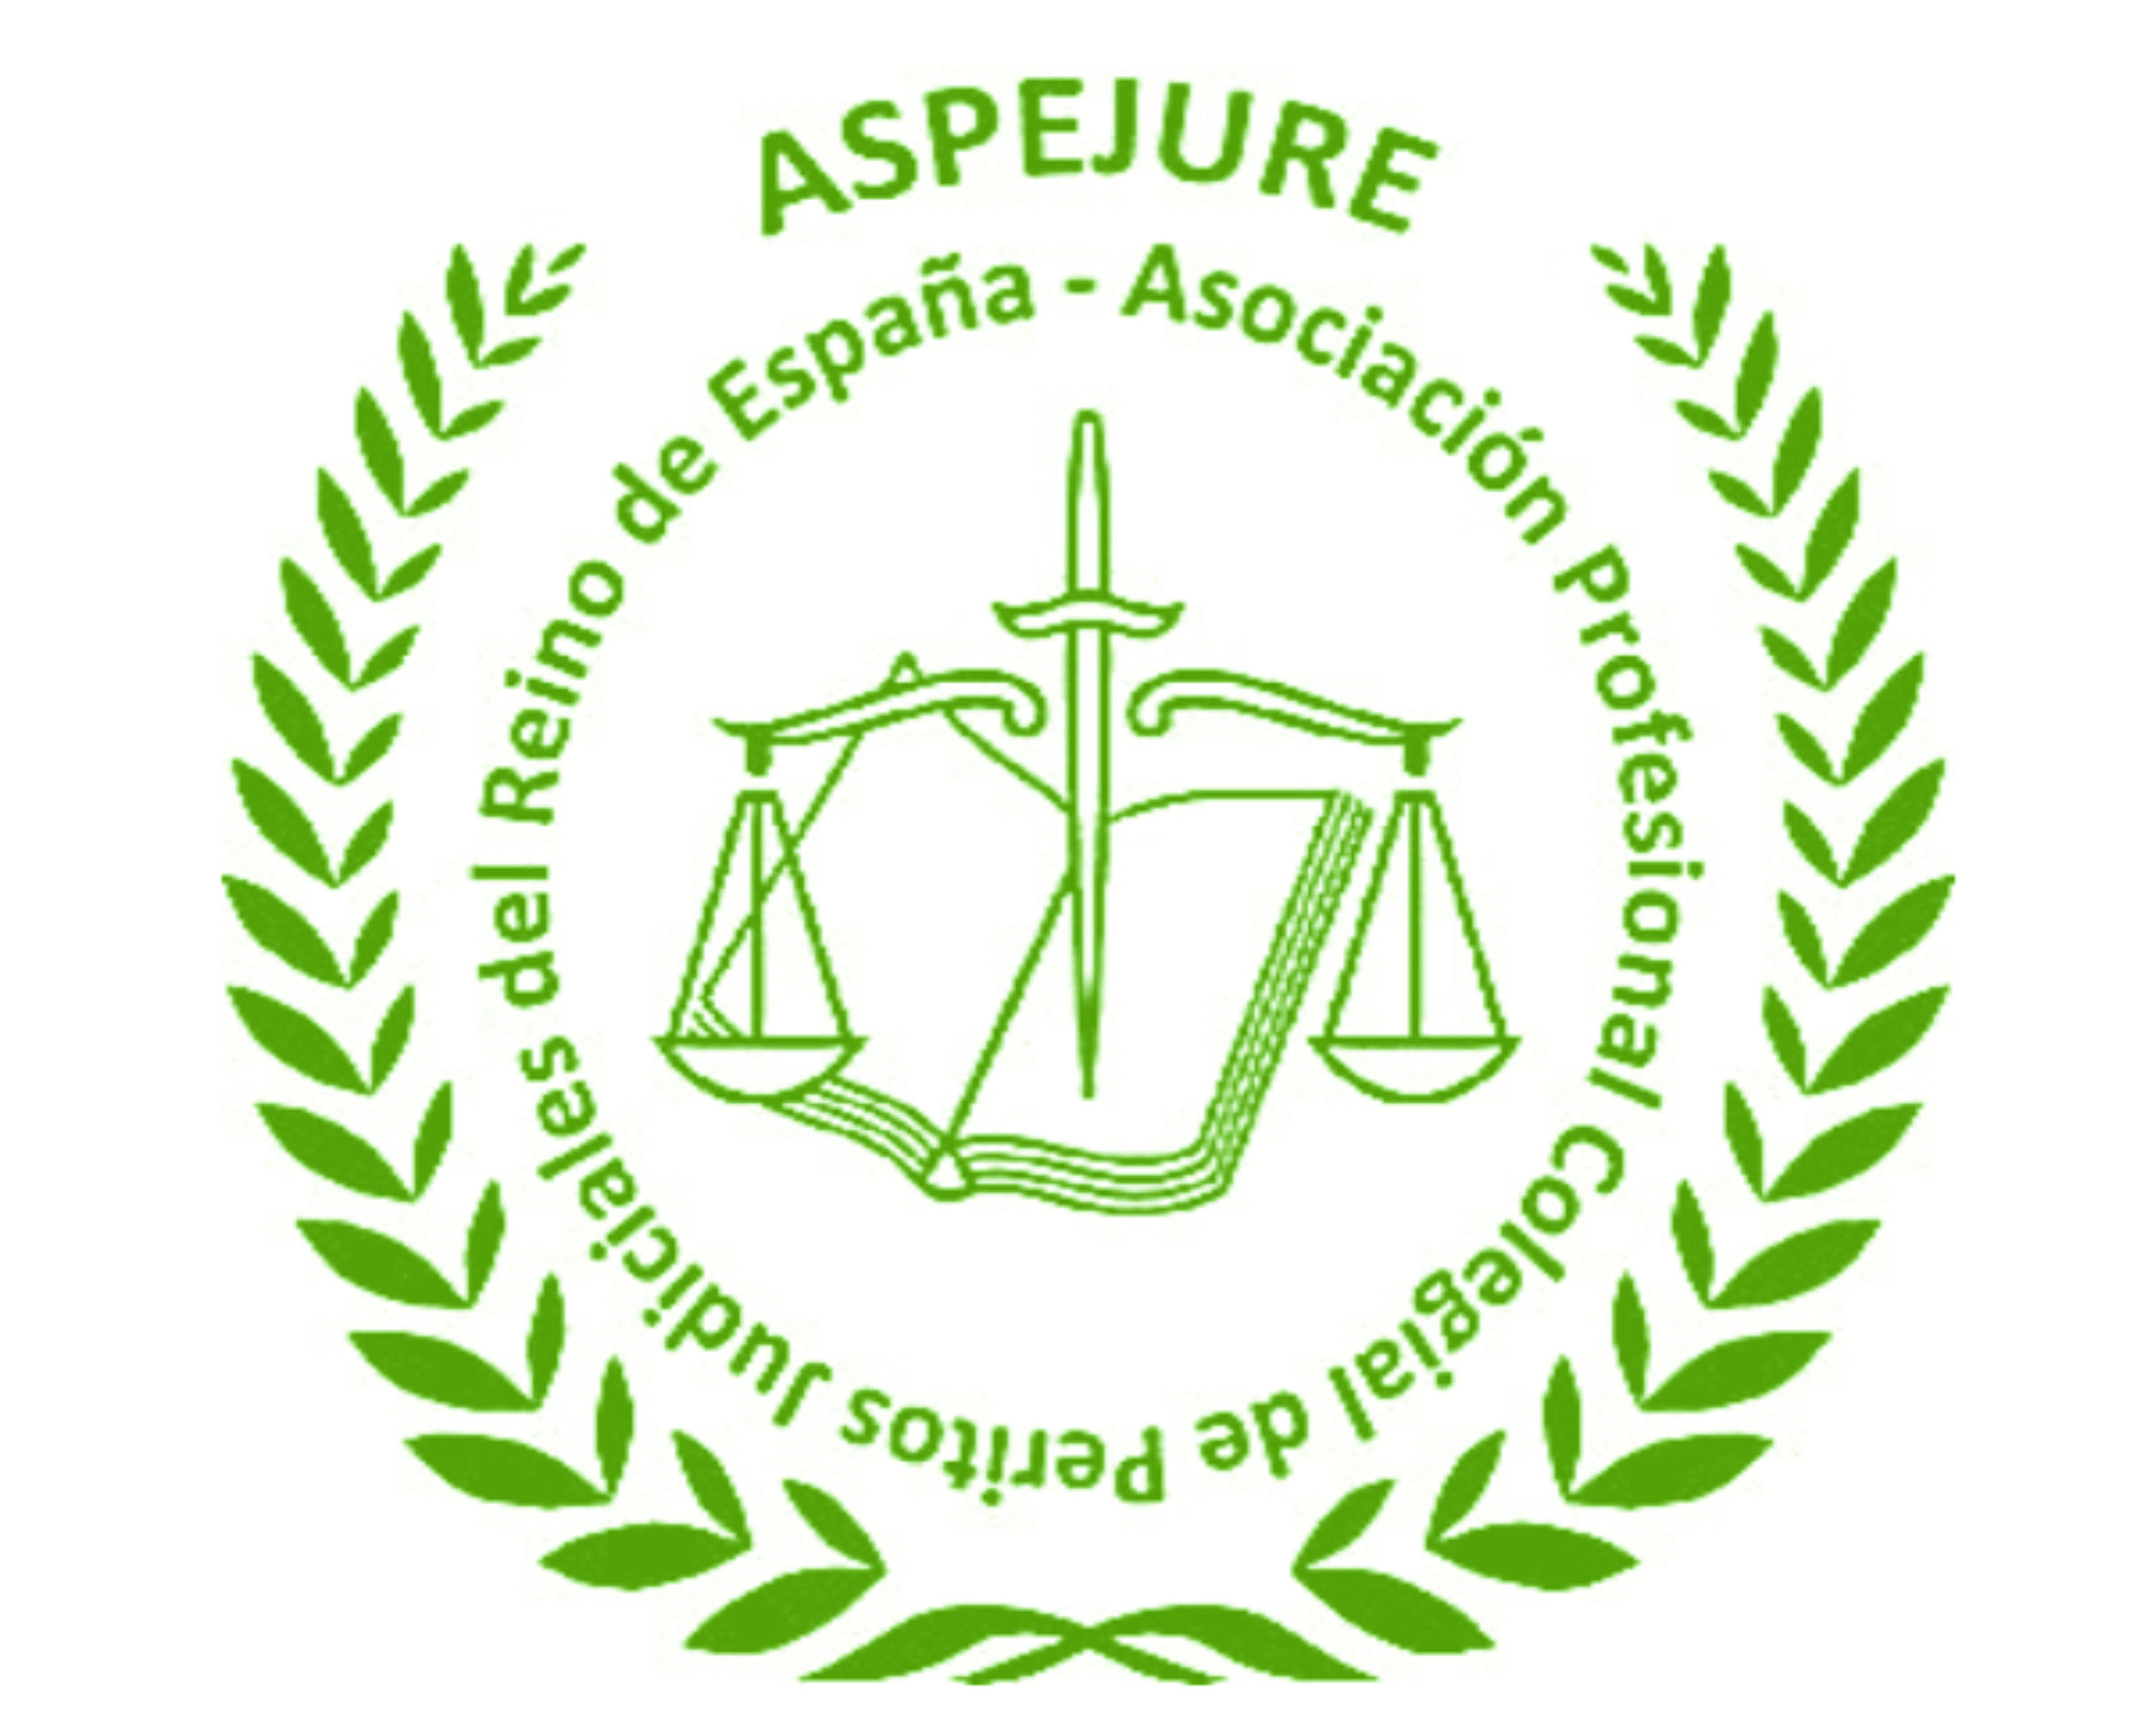 Aspejure (Asociación Profesional Colegial de Peritos Judiciales del Reino de España)